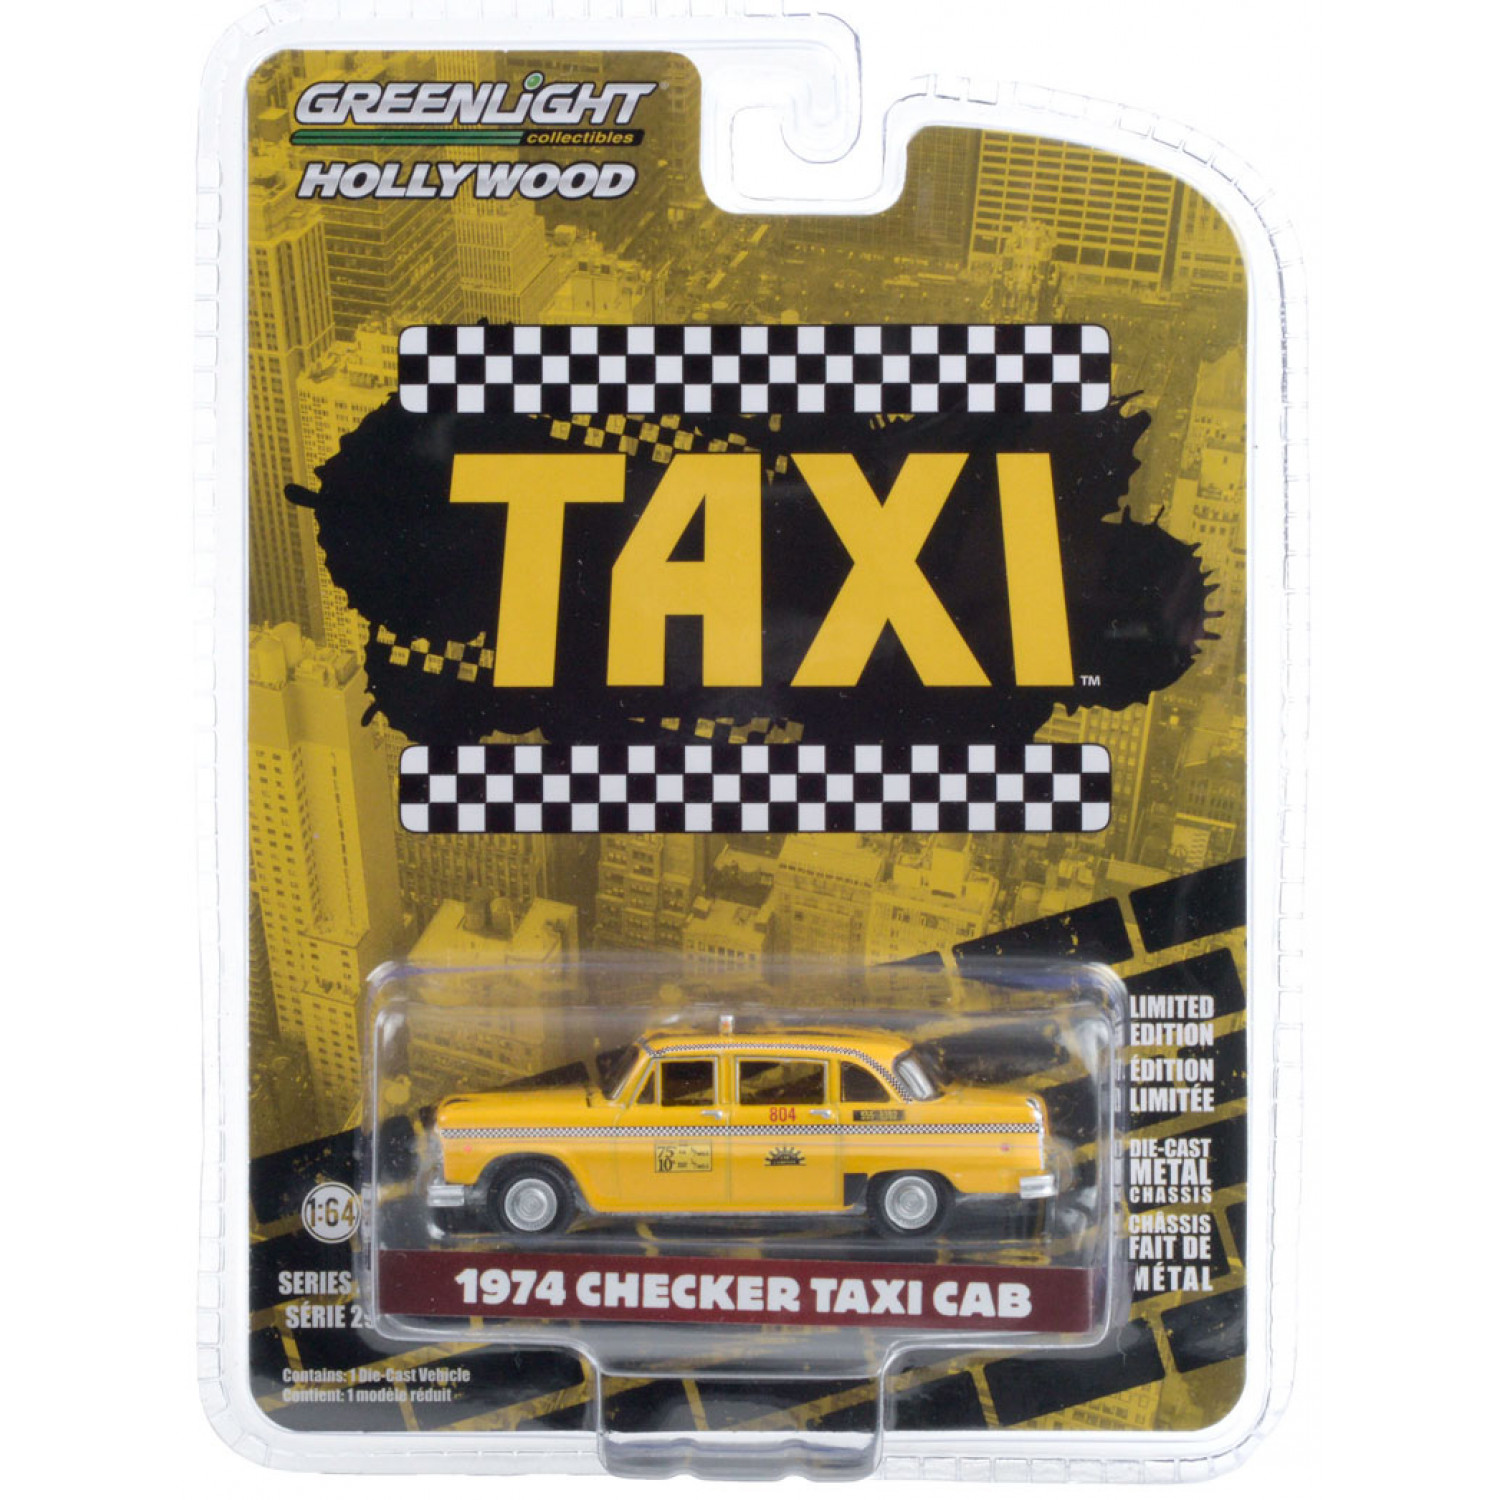 1974 Checker Taxi Cab